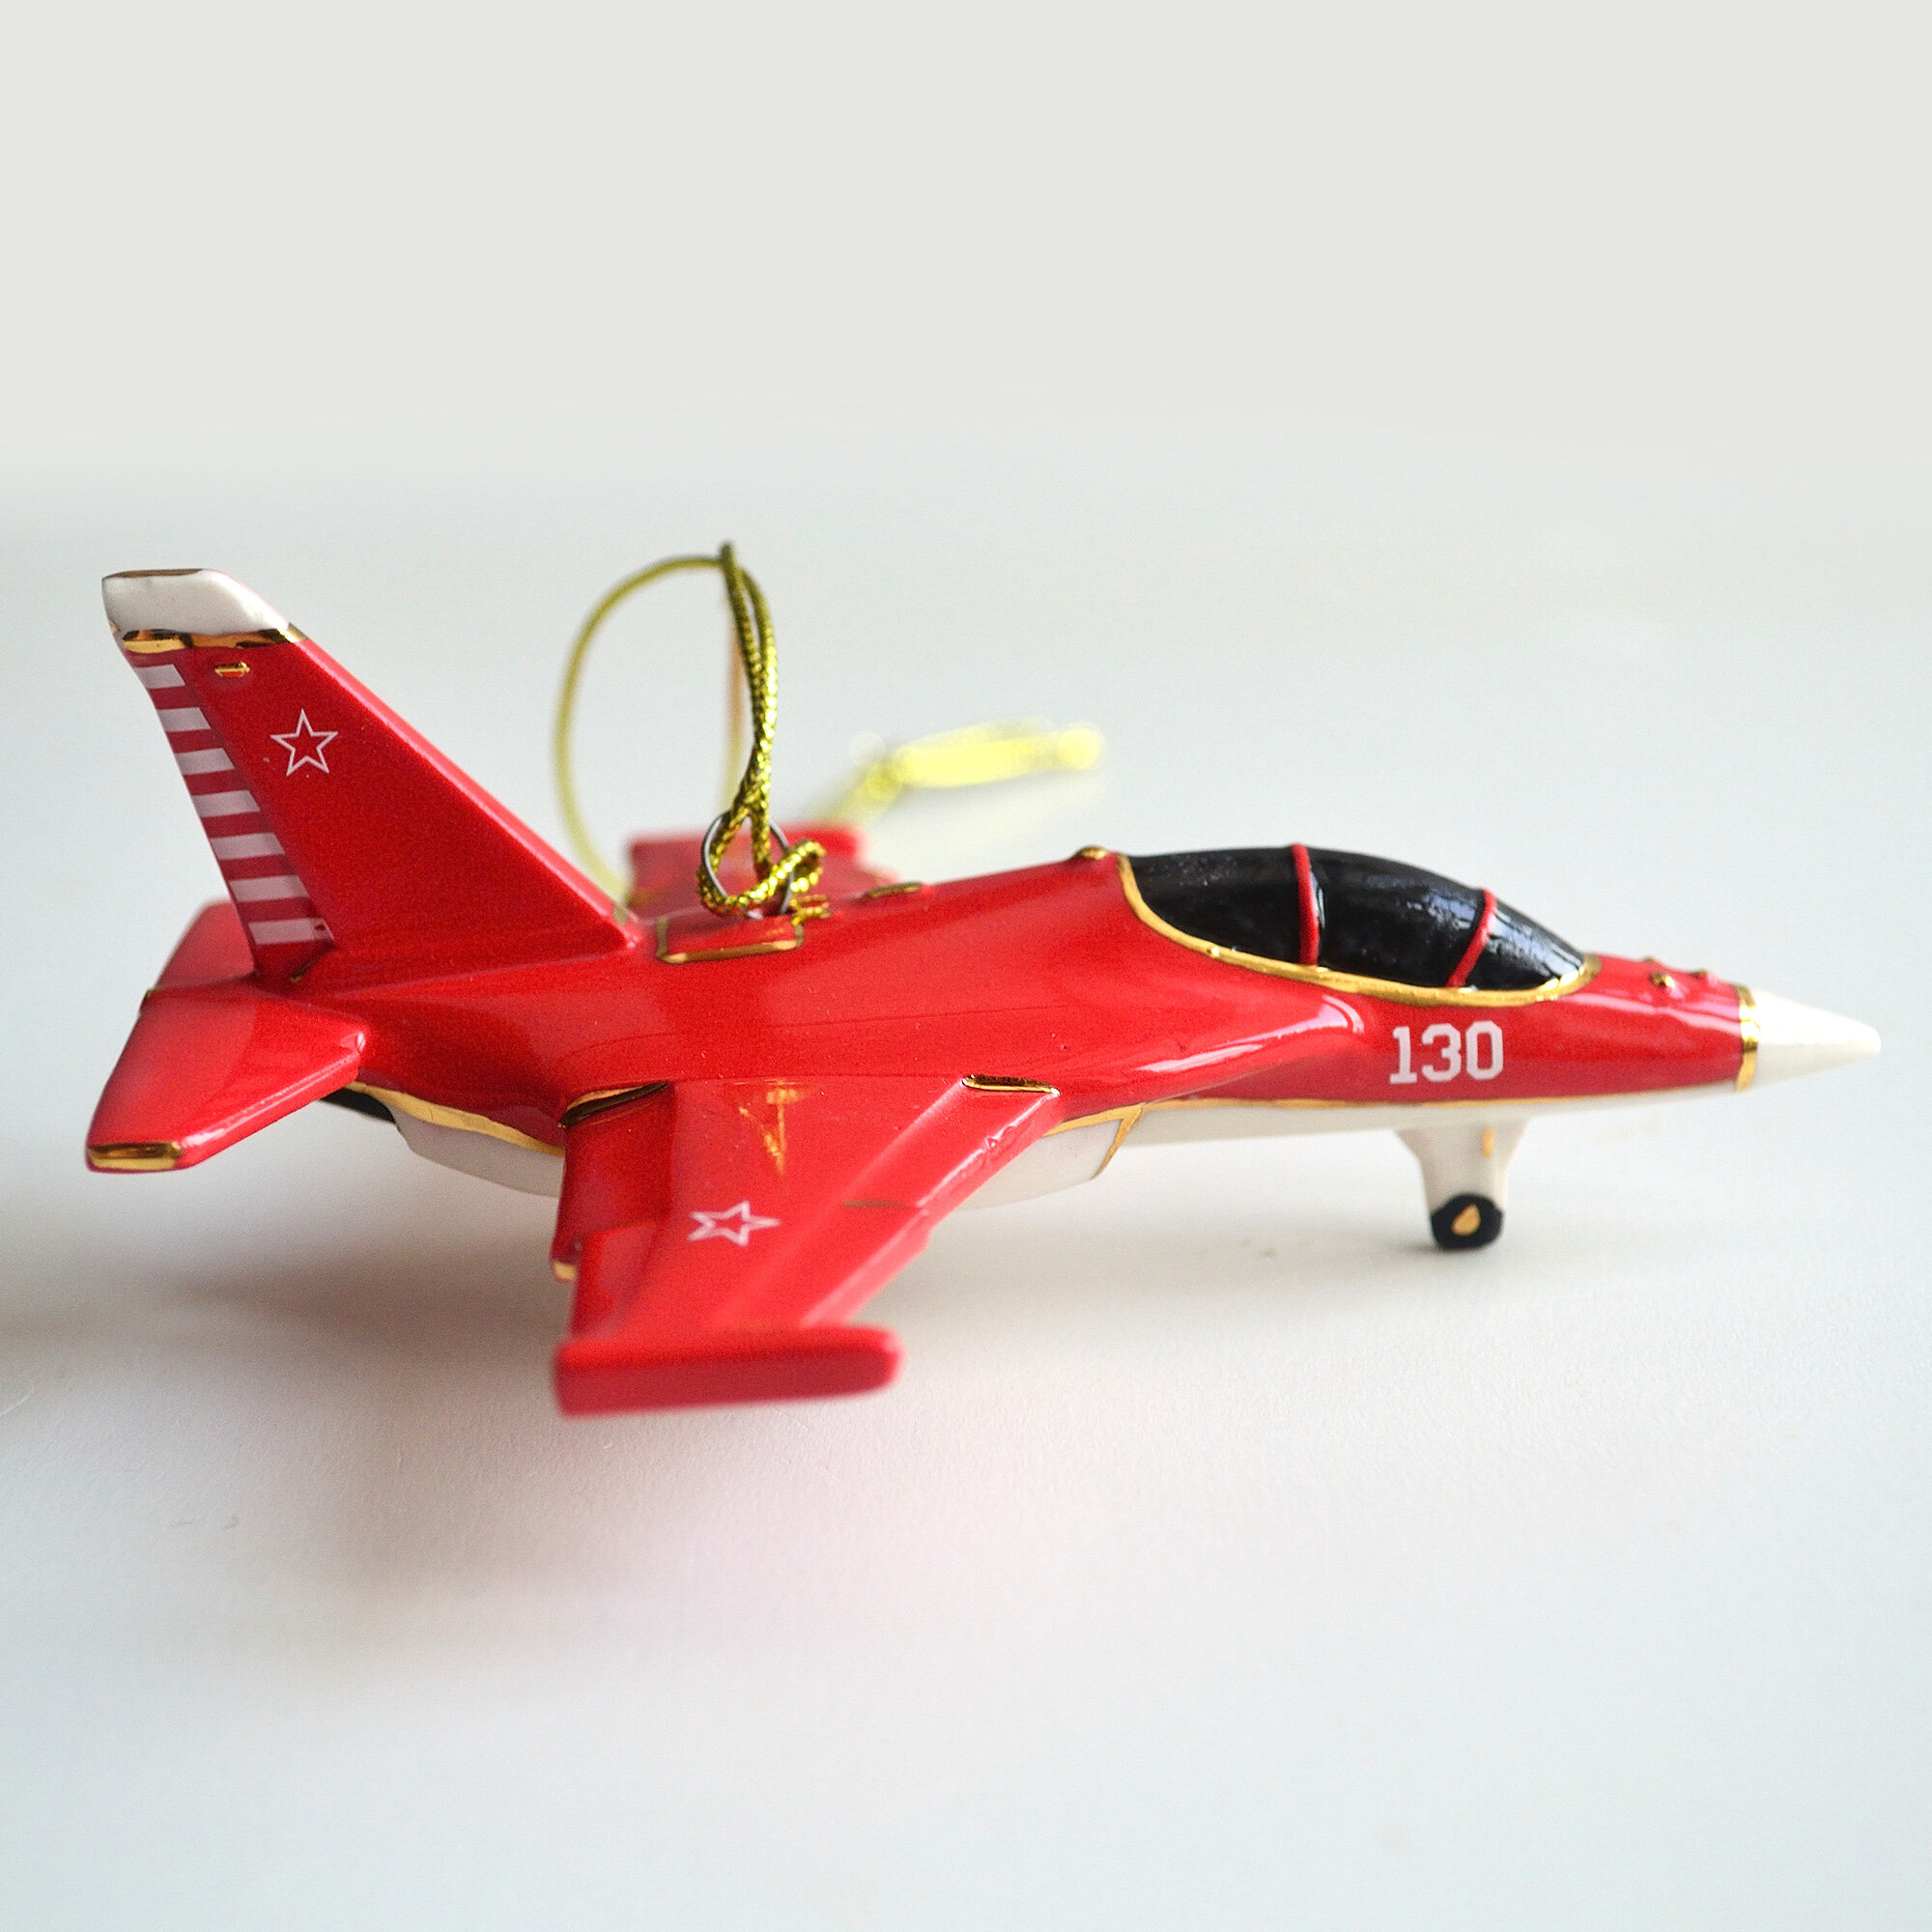 Елочная игрушка из фарфора самолет ЯК-130 красный